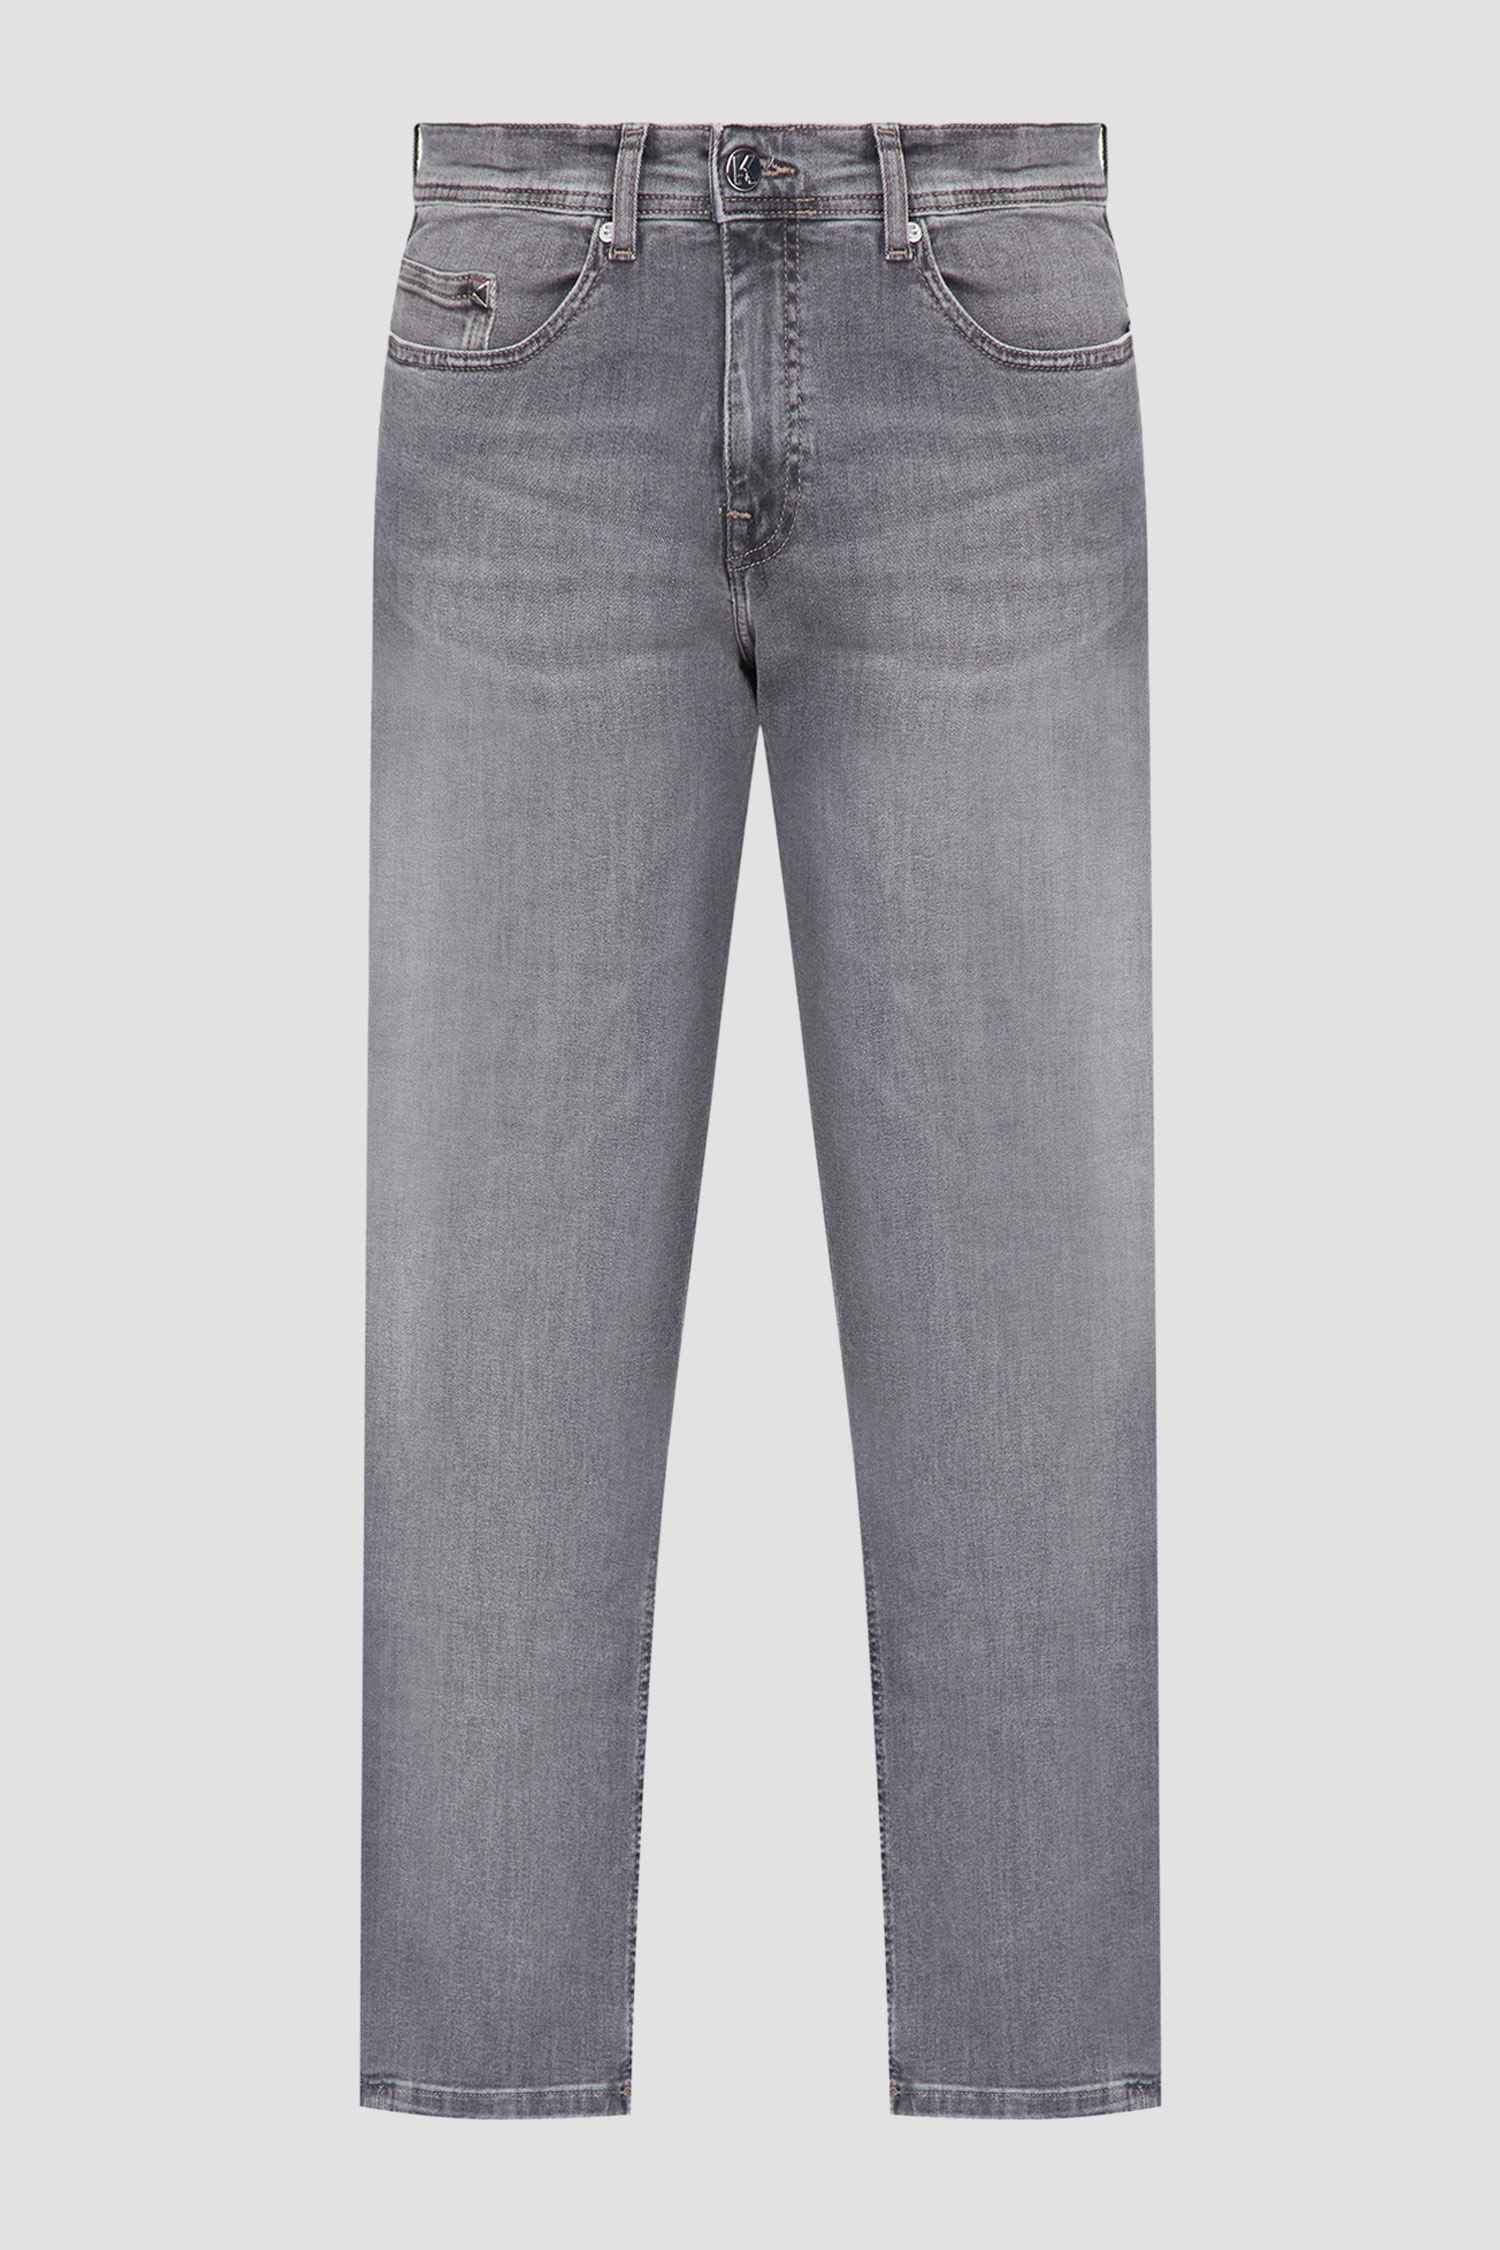 Мужские серые джинсы Karl Lagerfeld 500830.265840;910